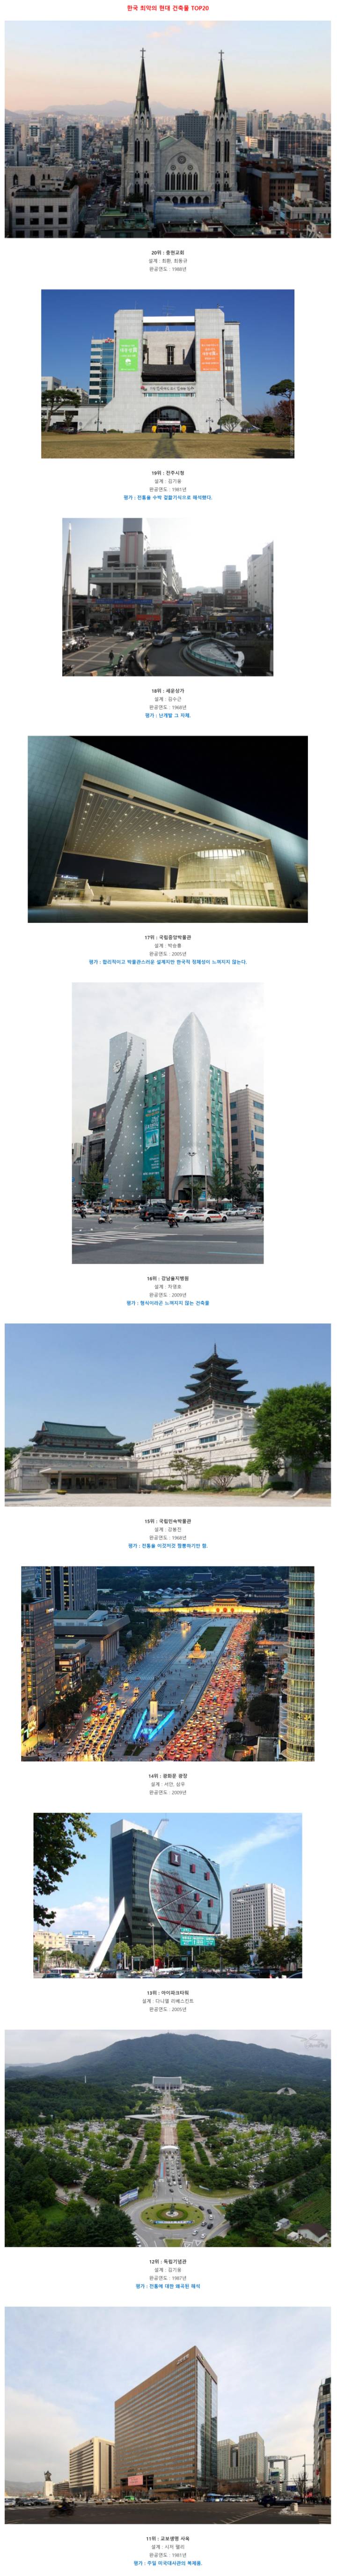  한국 현대건물 베스트&워스트 20